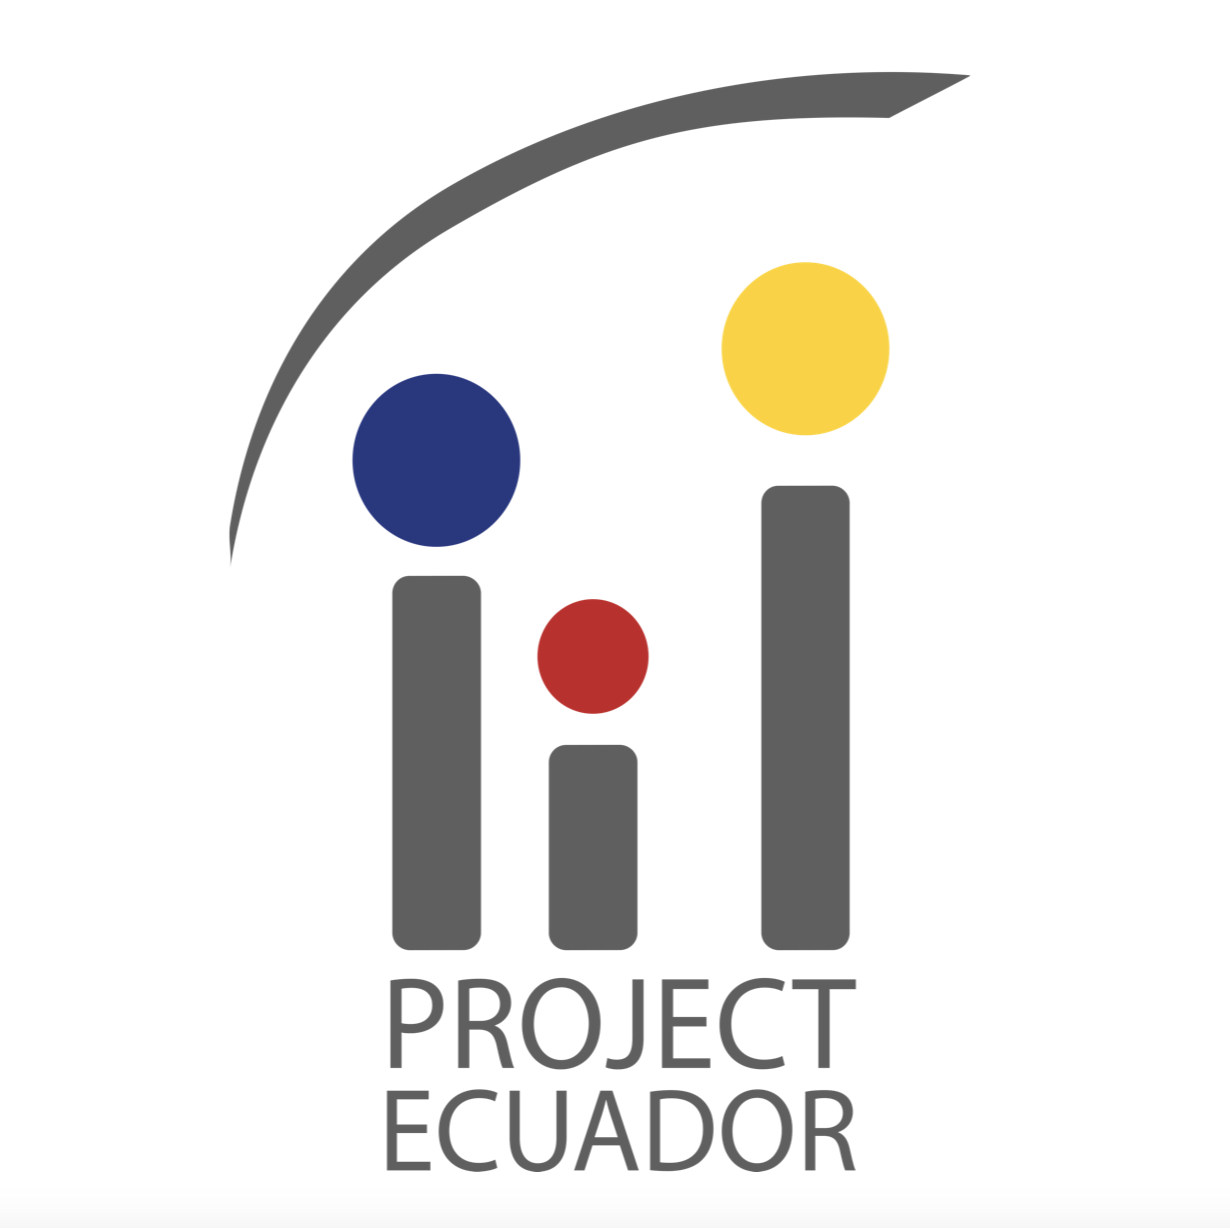 Project Ecuador